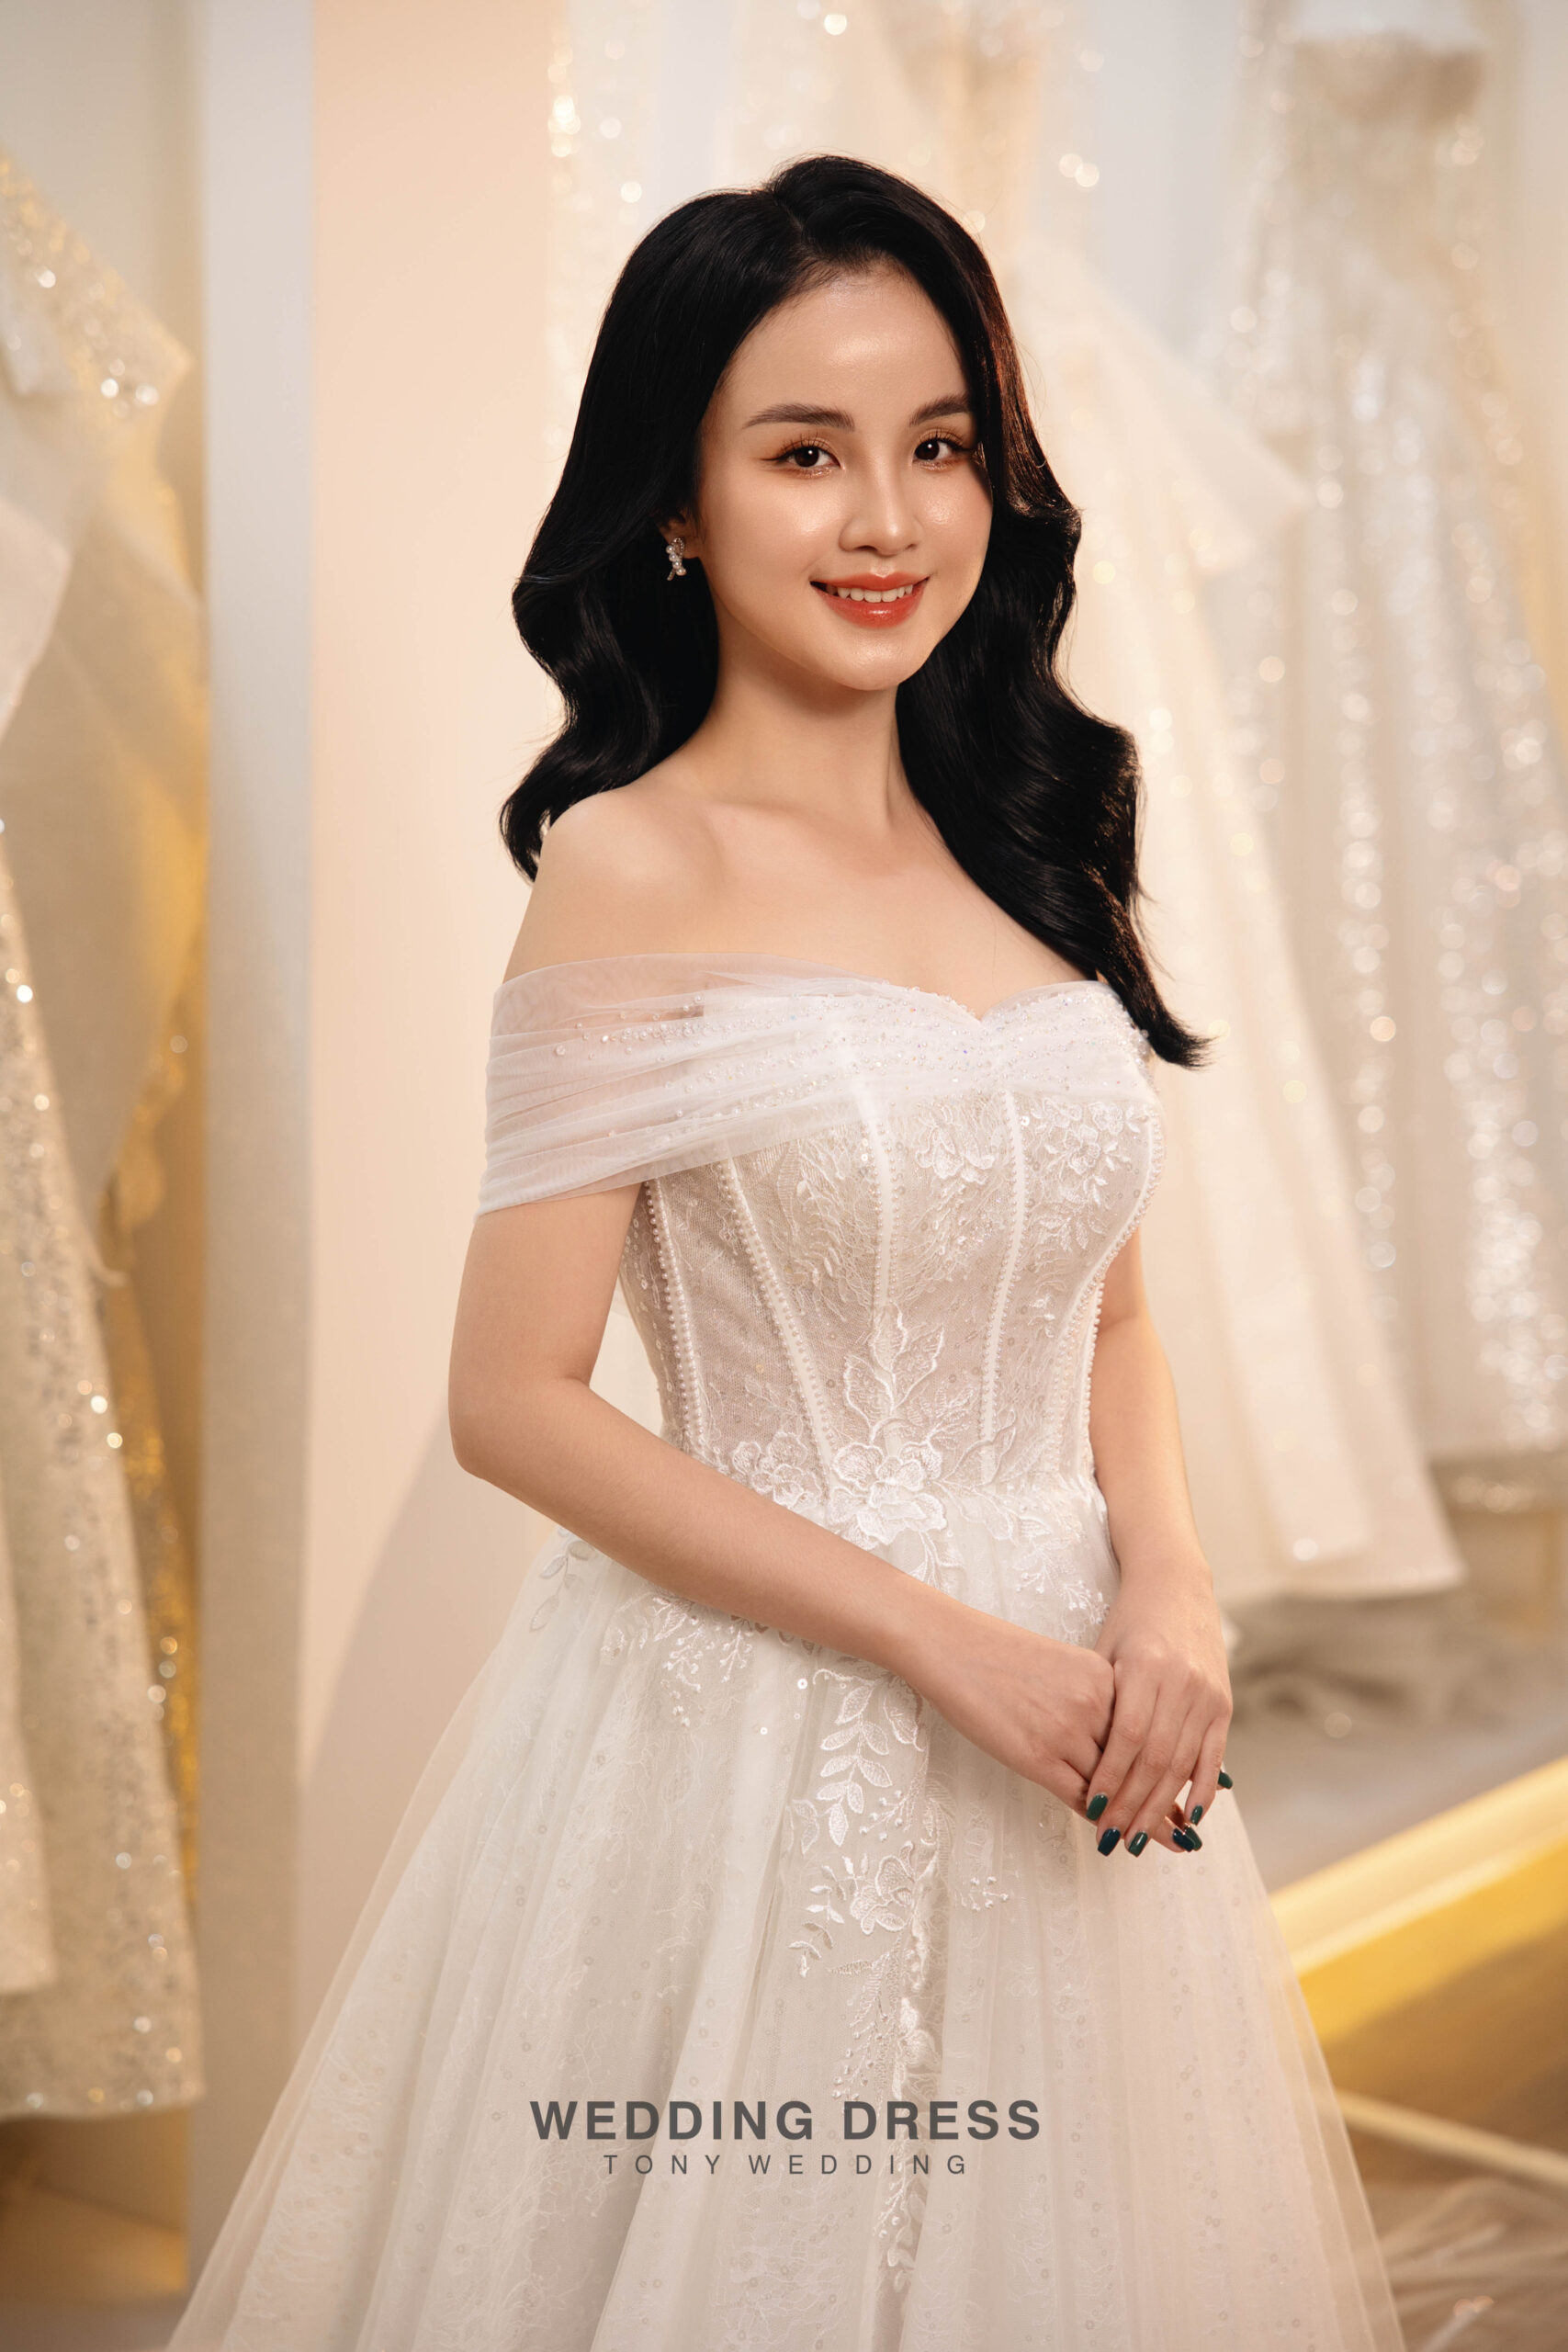 Say đắm với 100 mẫu thiết kế váy cưới trễ vai đẹp nhất 2022